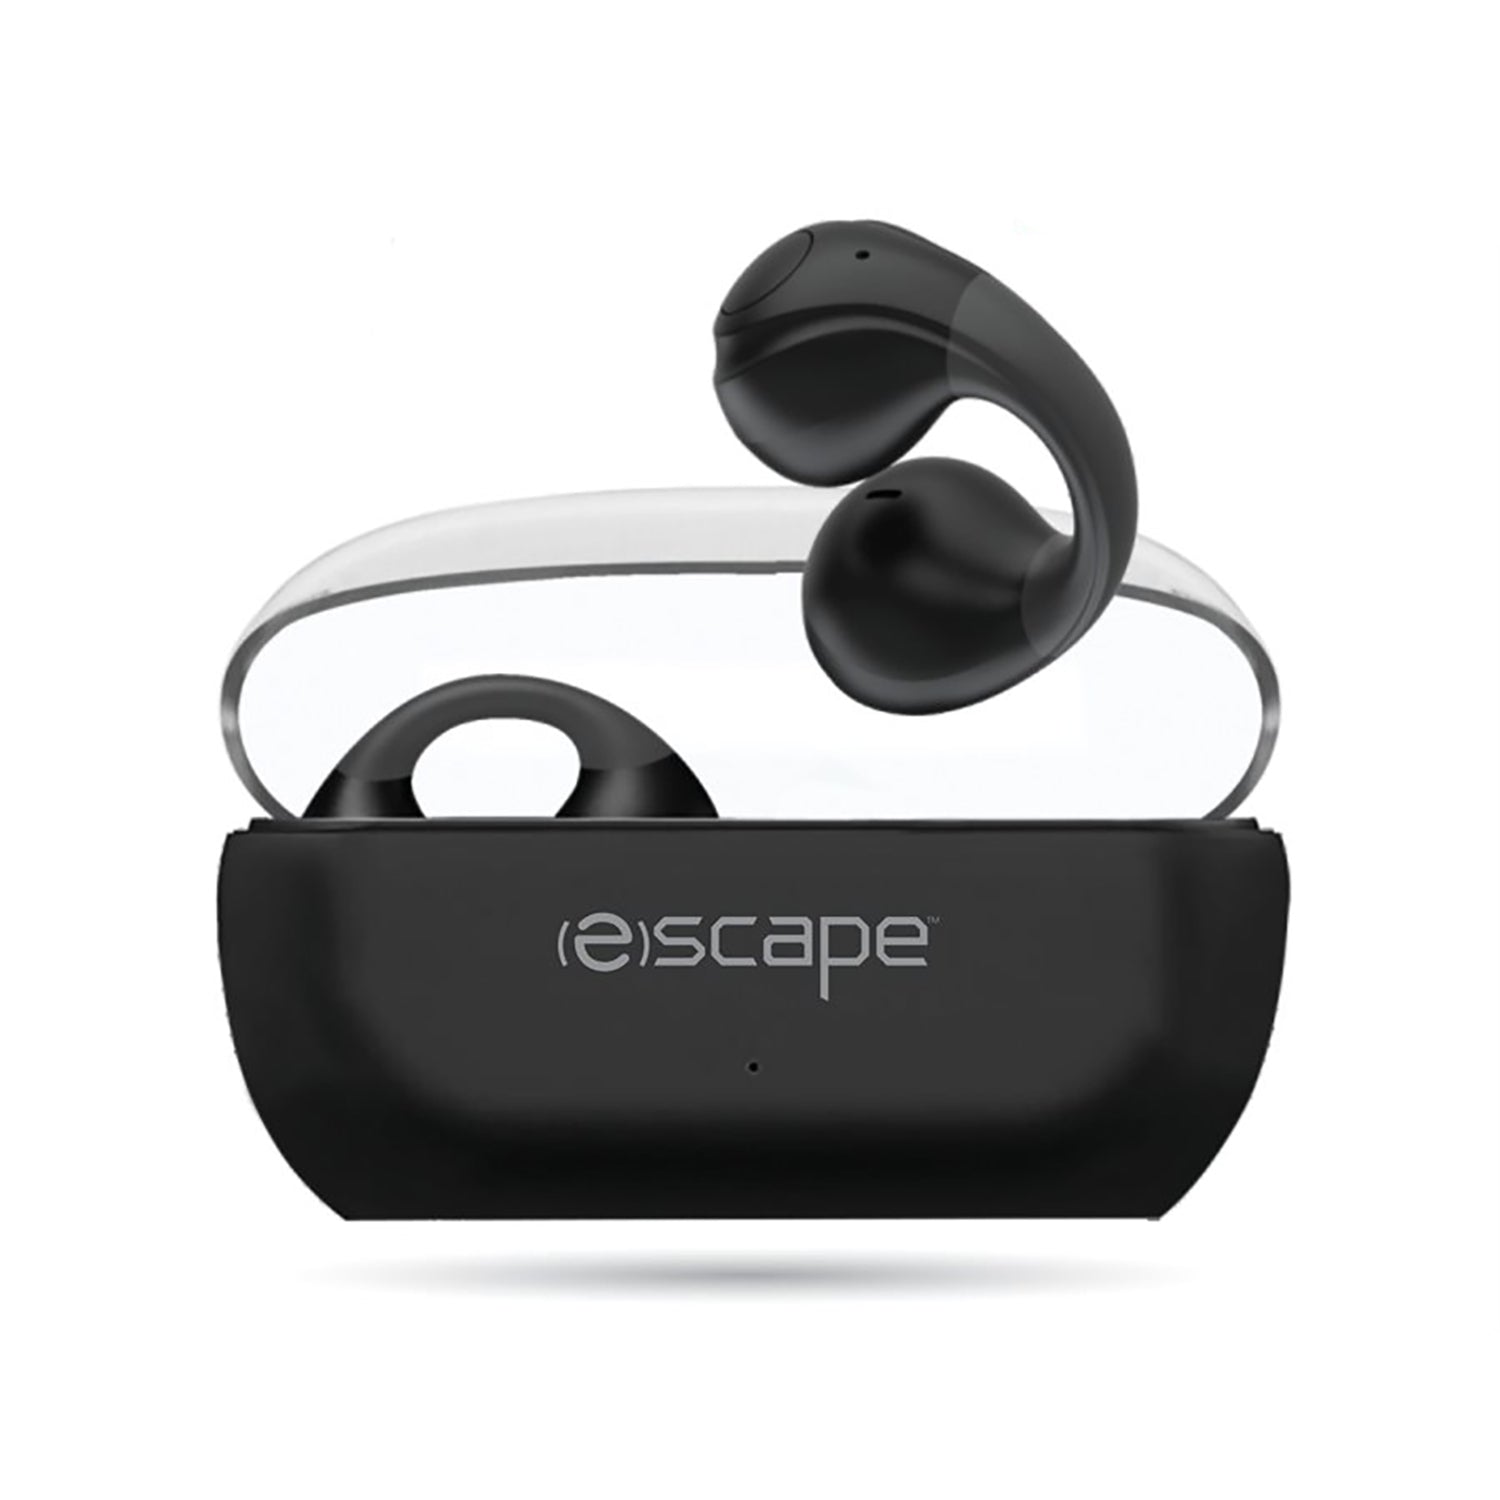 Escape - Casque d'écoute Stéréo Sans-Fil avec Microphone Intégré